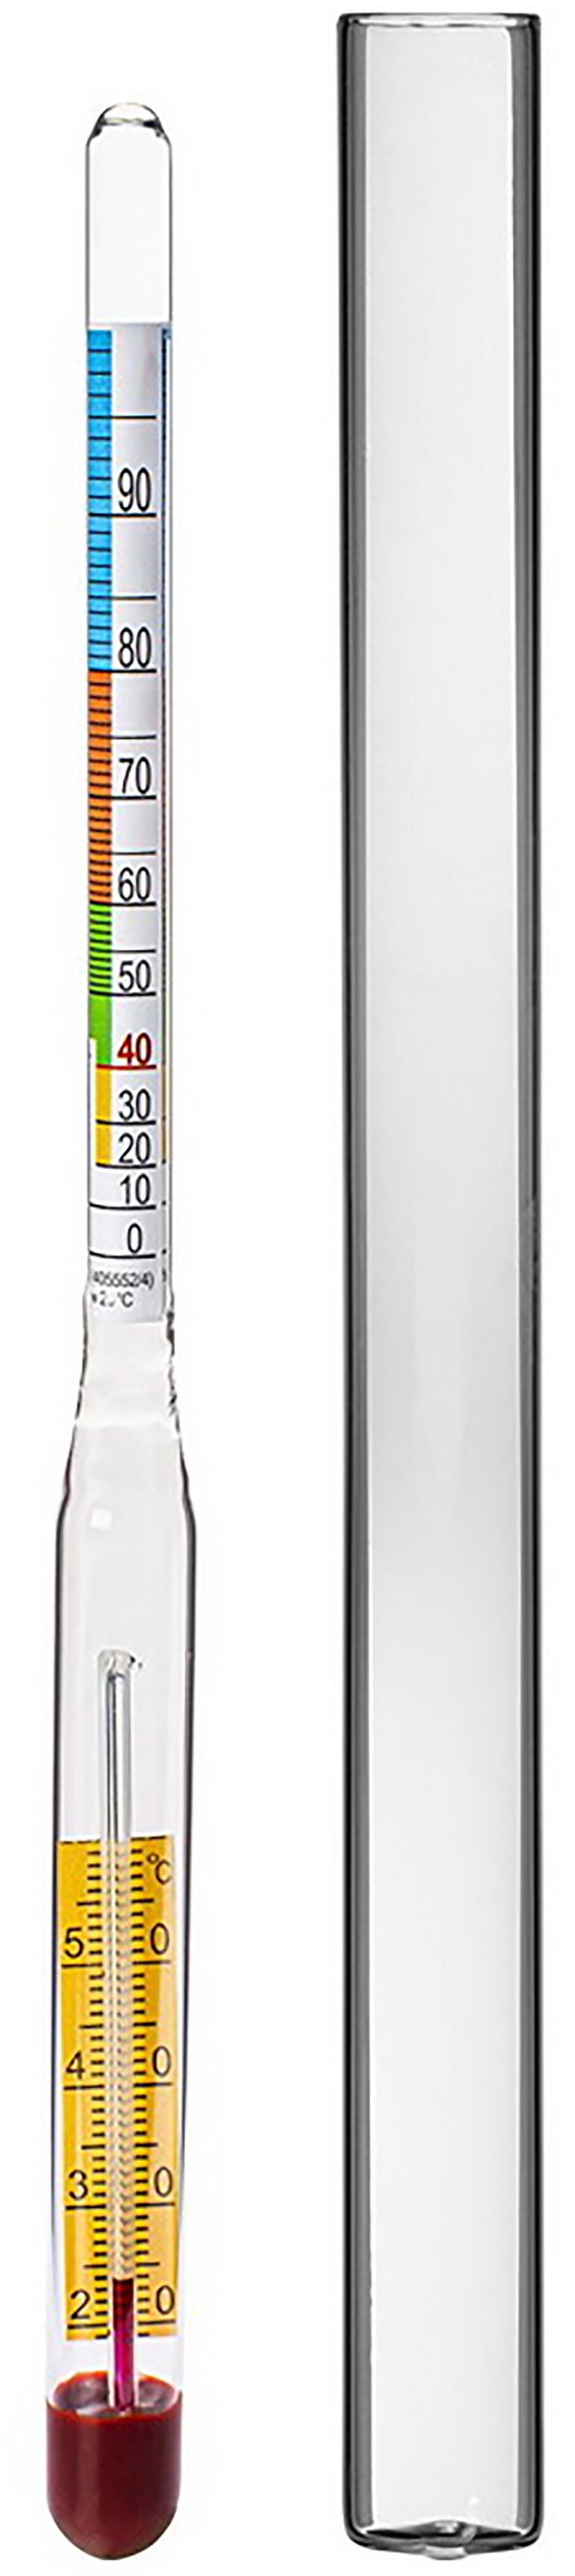 alkoholmetr s teploměrem 0-95% 0.04 Kg MAXMIX Sklad14 330391 13